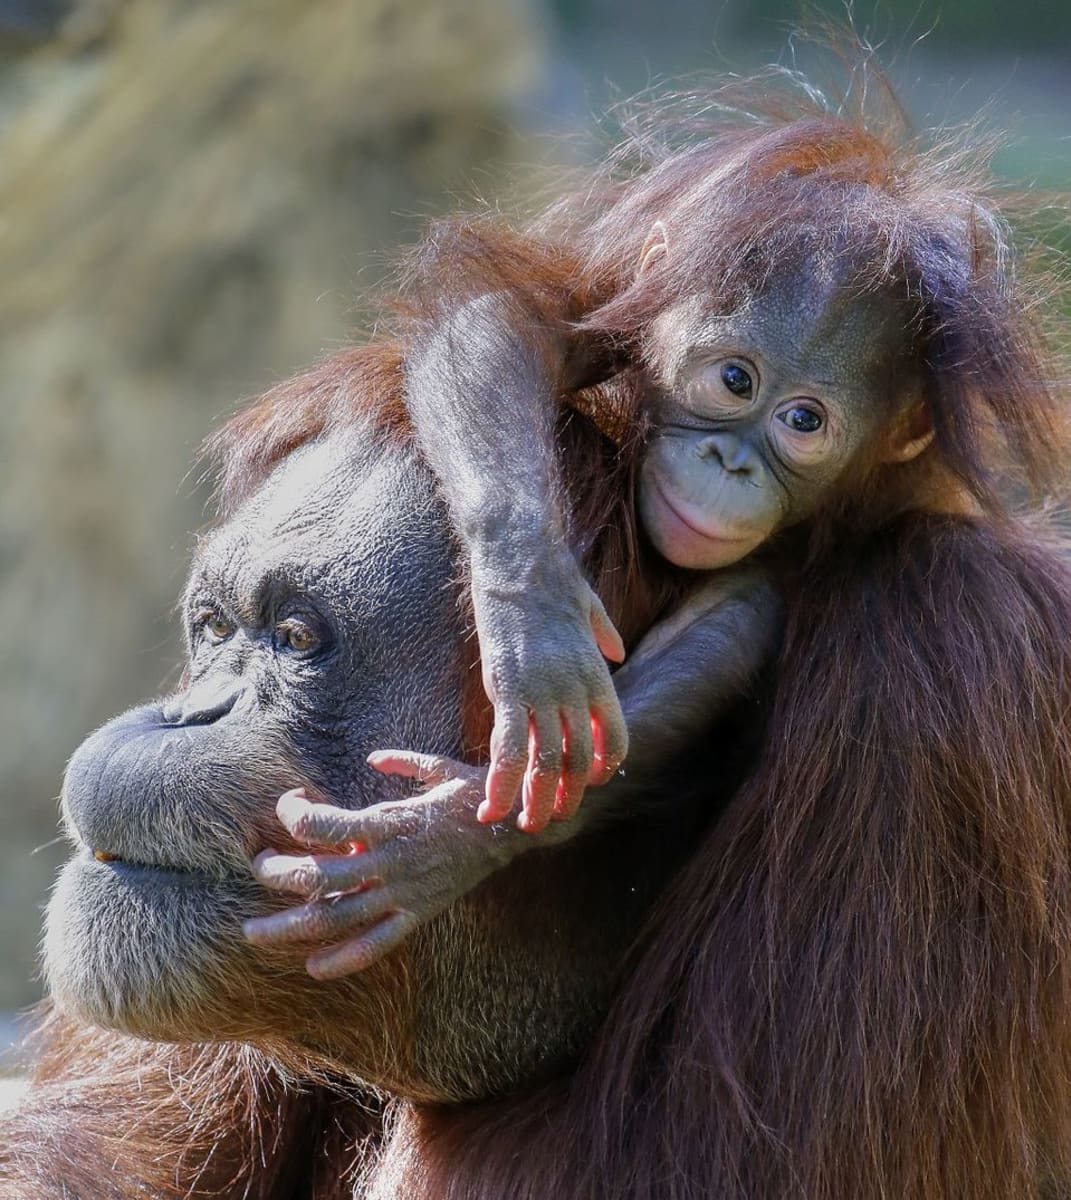 Oranginpoikanen aikuisen eläimen selässä.